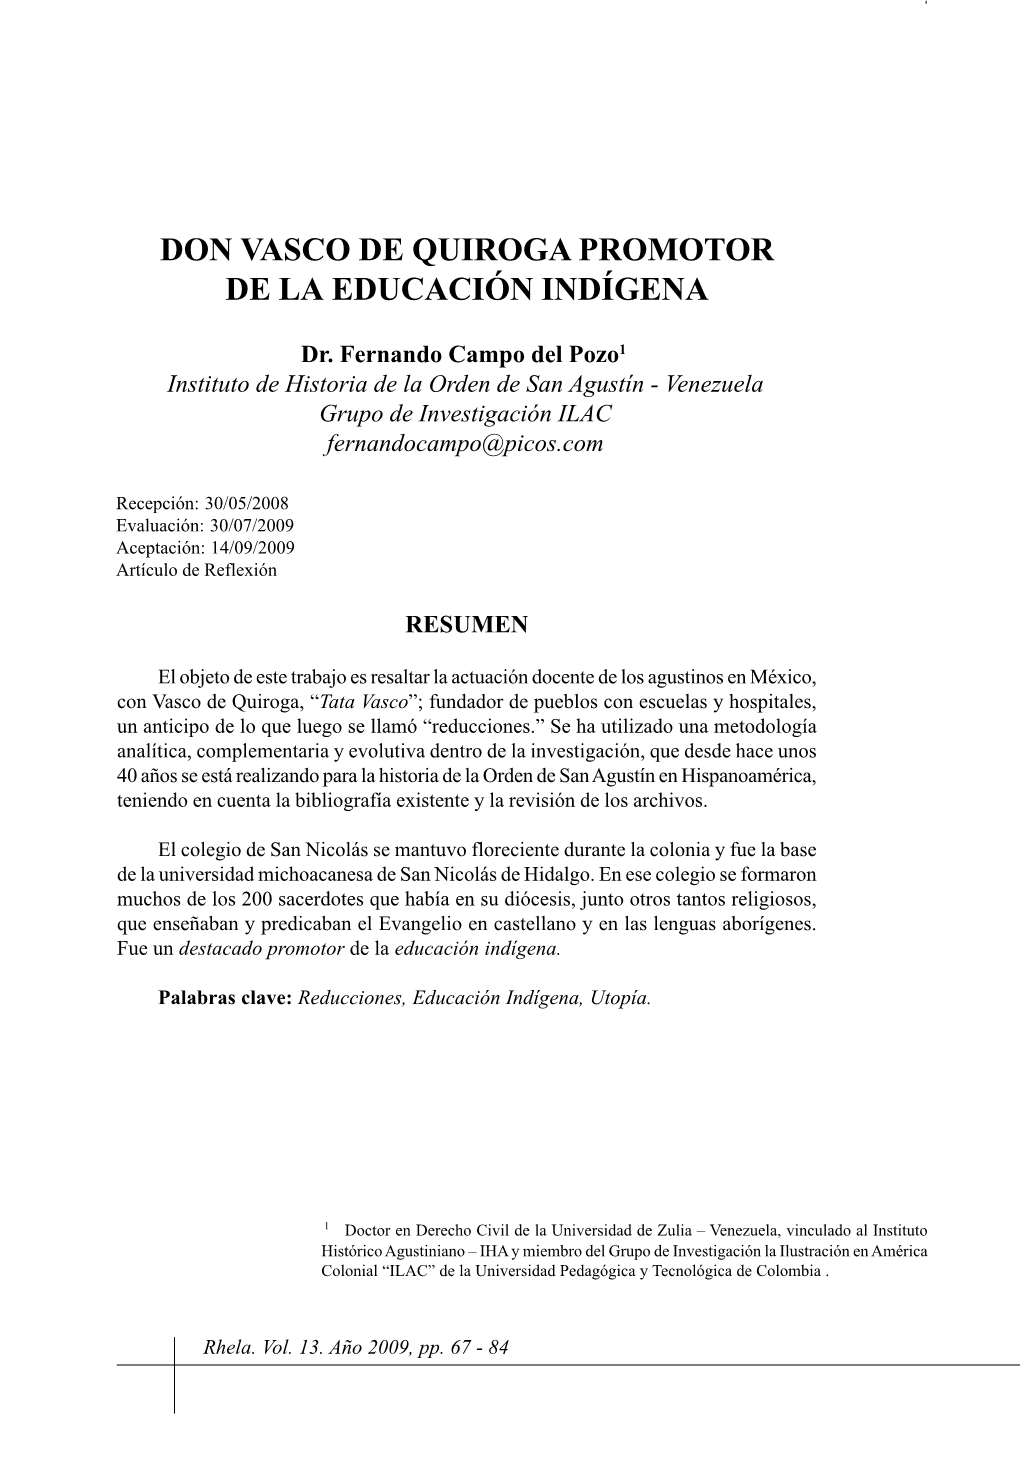 Don Vasco De Quiroga Promotor De La Educación Indígena